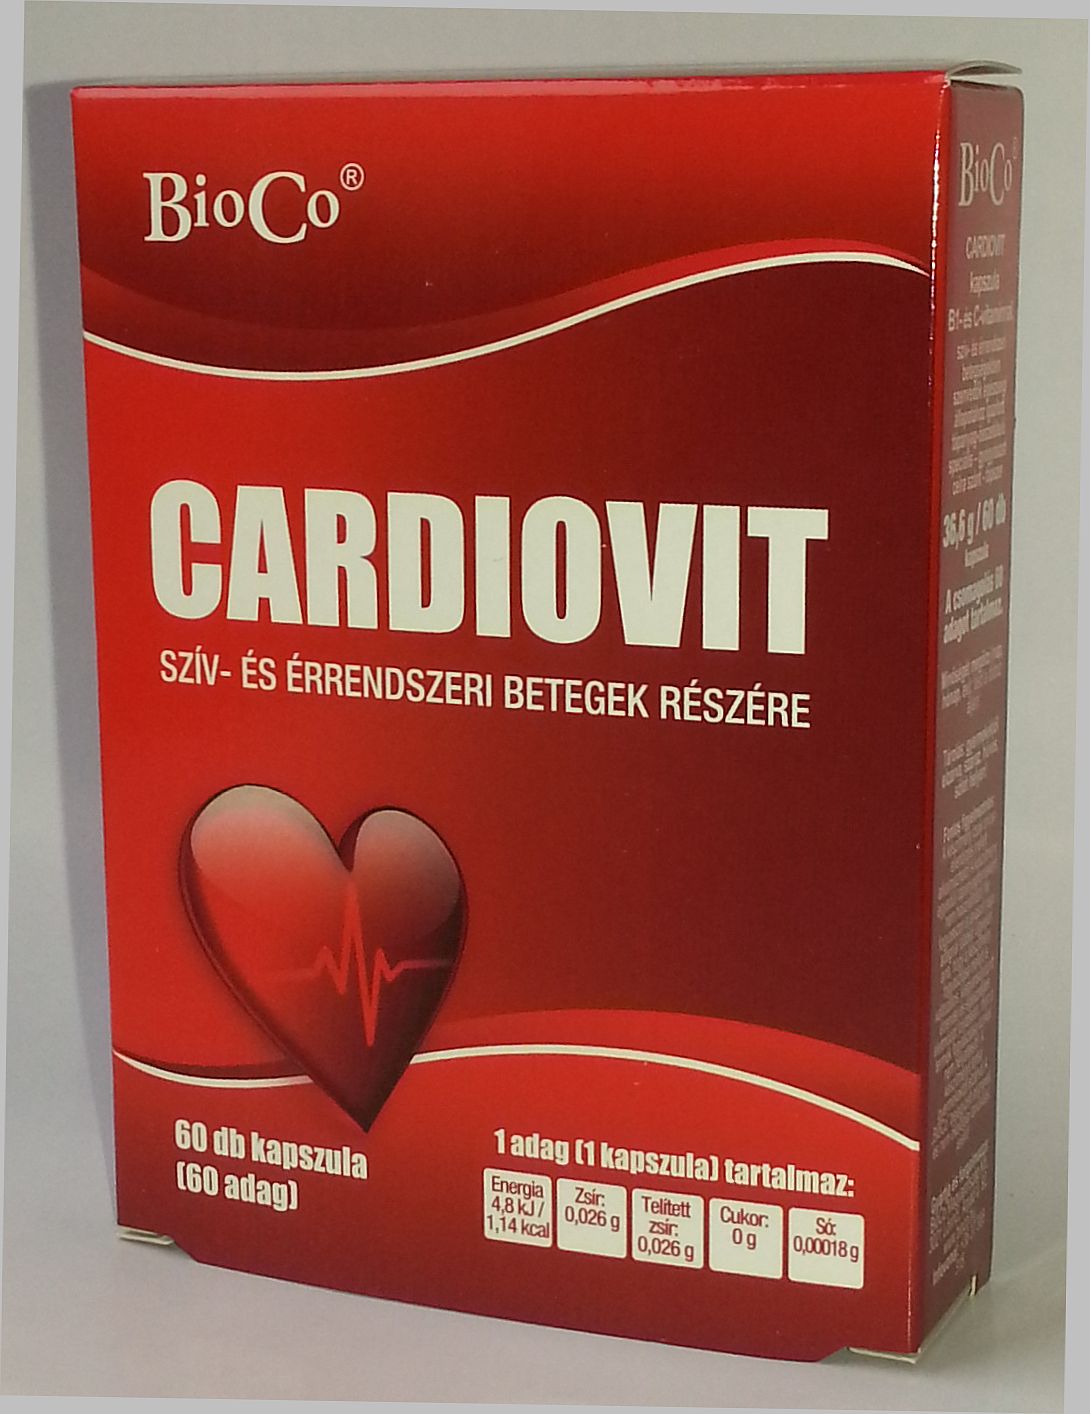 bioco cardiovit.jpg